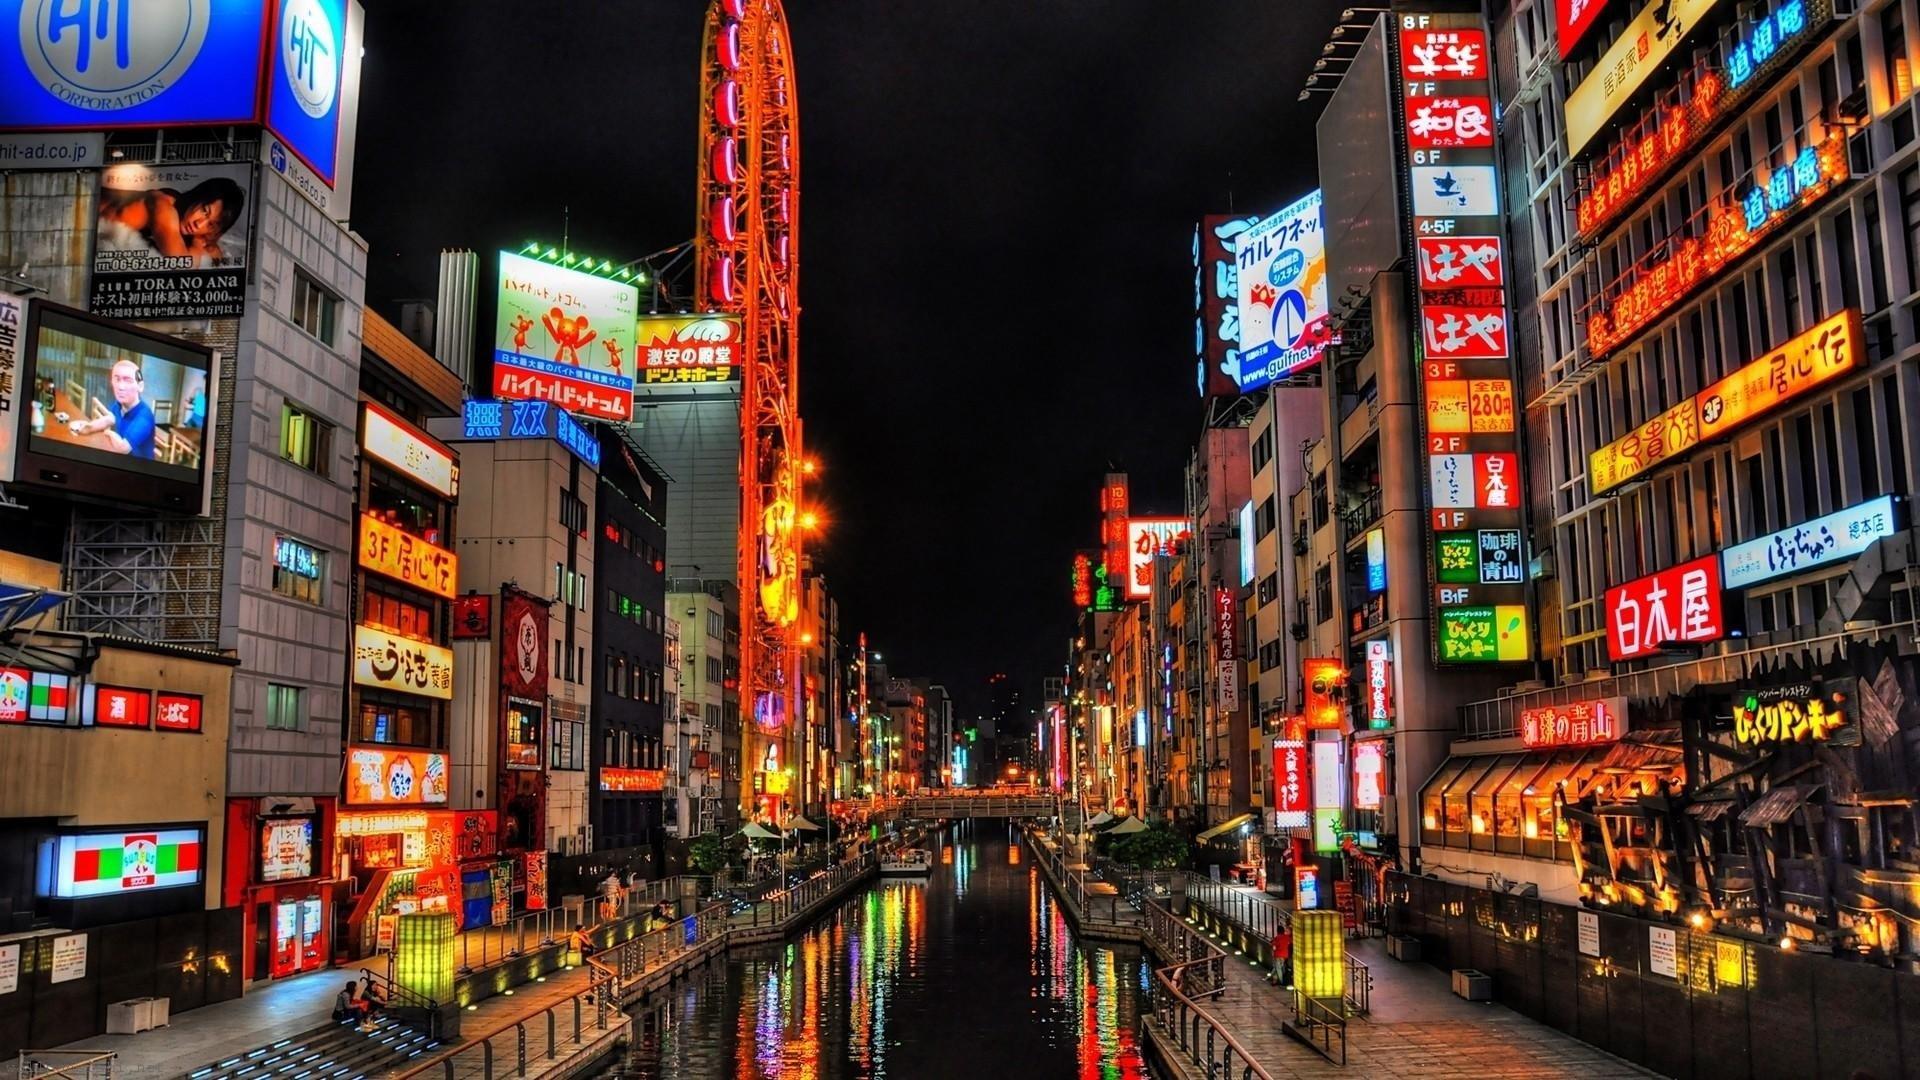 Osaka HD Wallpaper and Background Image